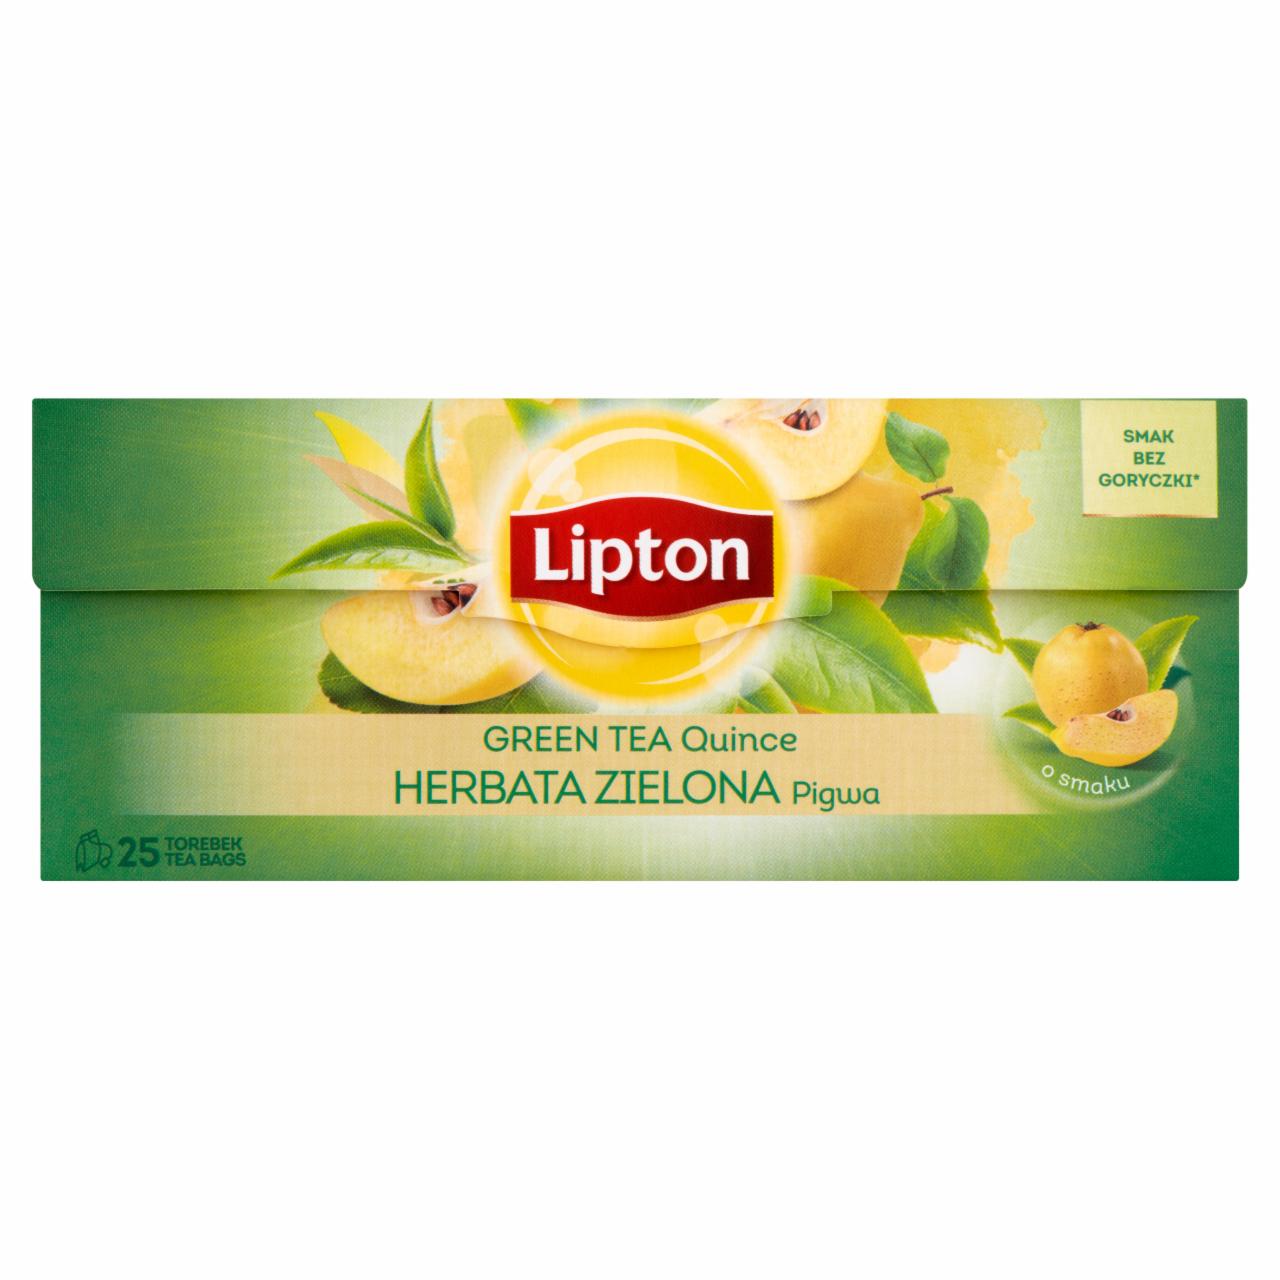 Zdjęcia - Lipton Herbata zielona pigwa 40 g (25 torebek)